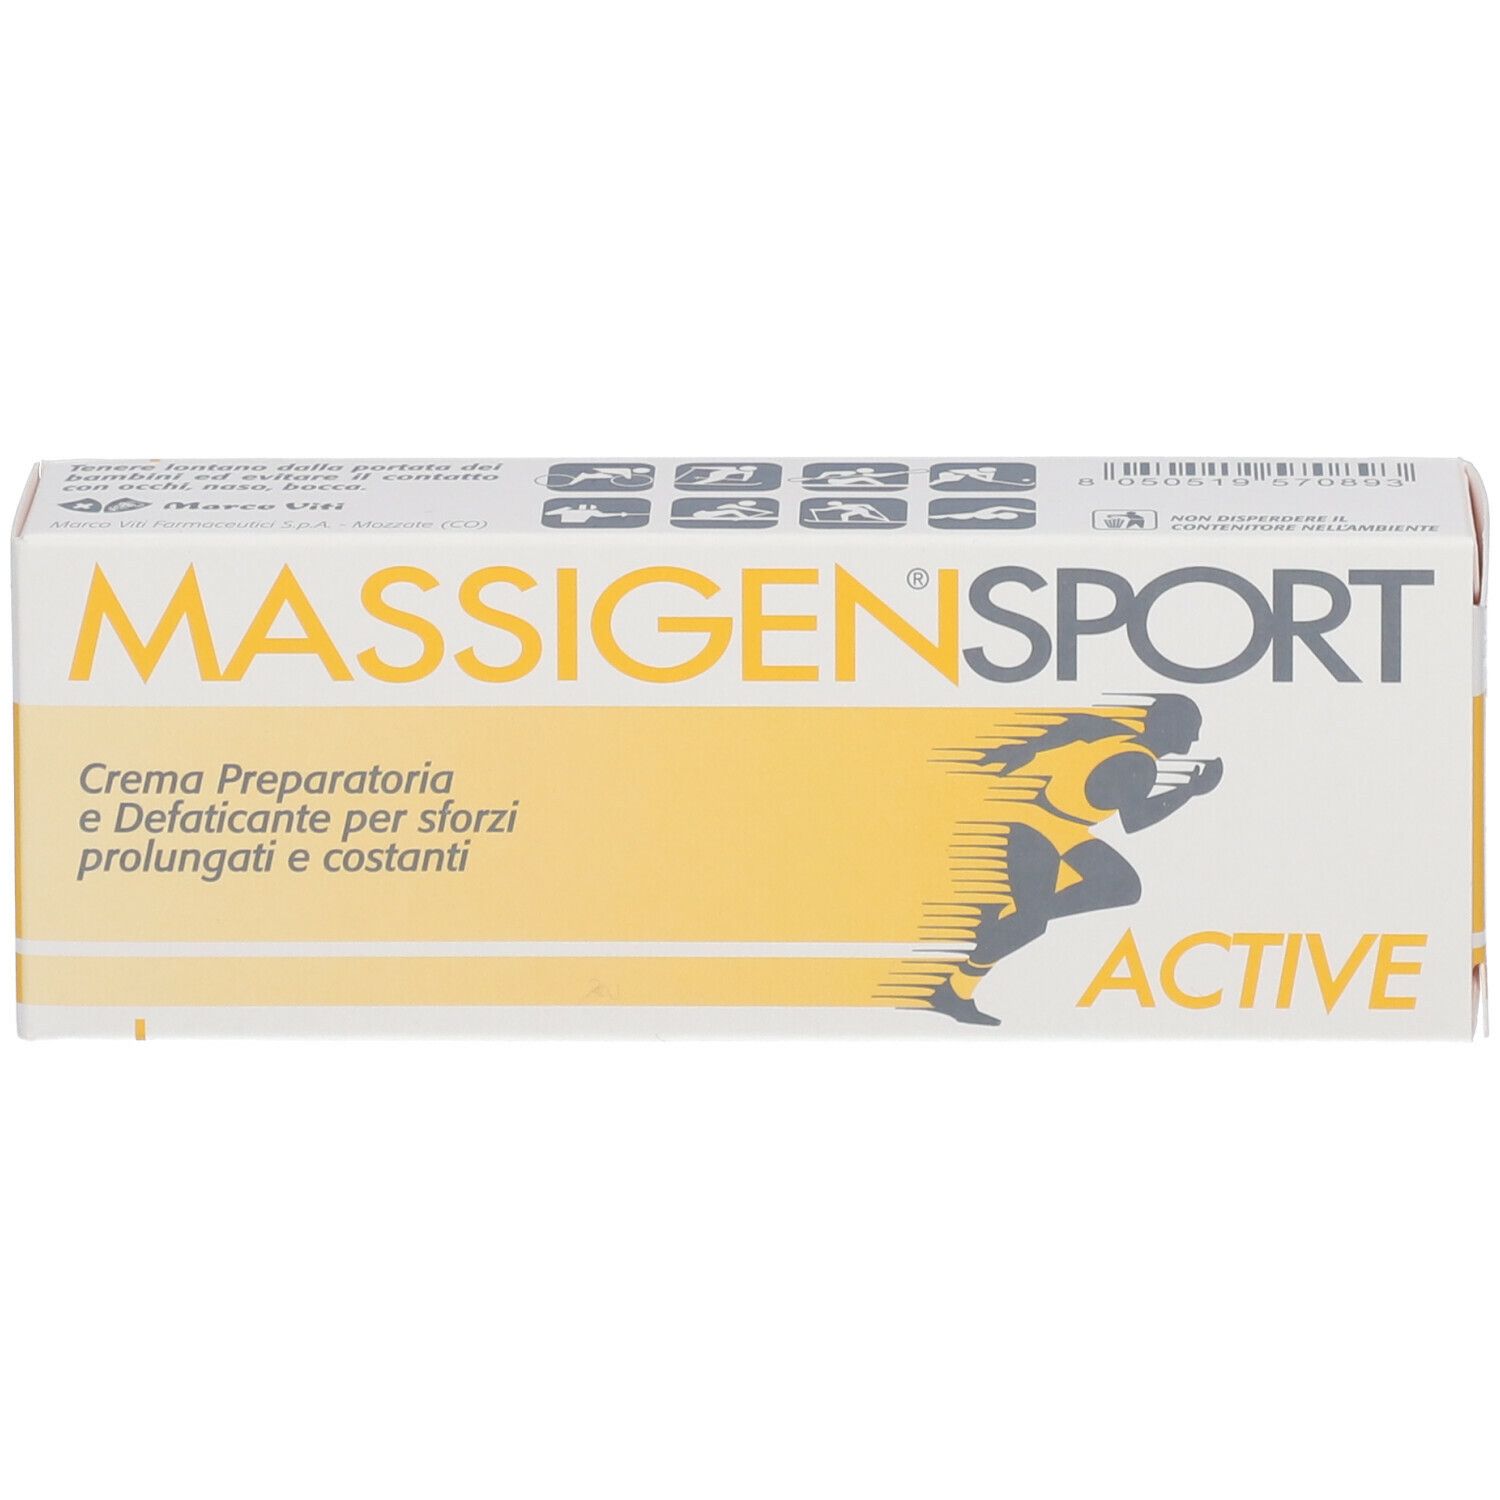 Massigen Sport® Active Crema